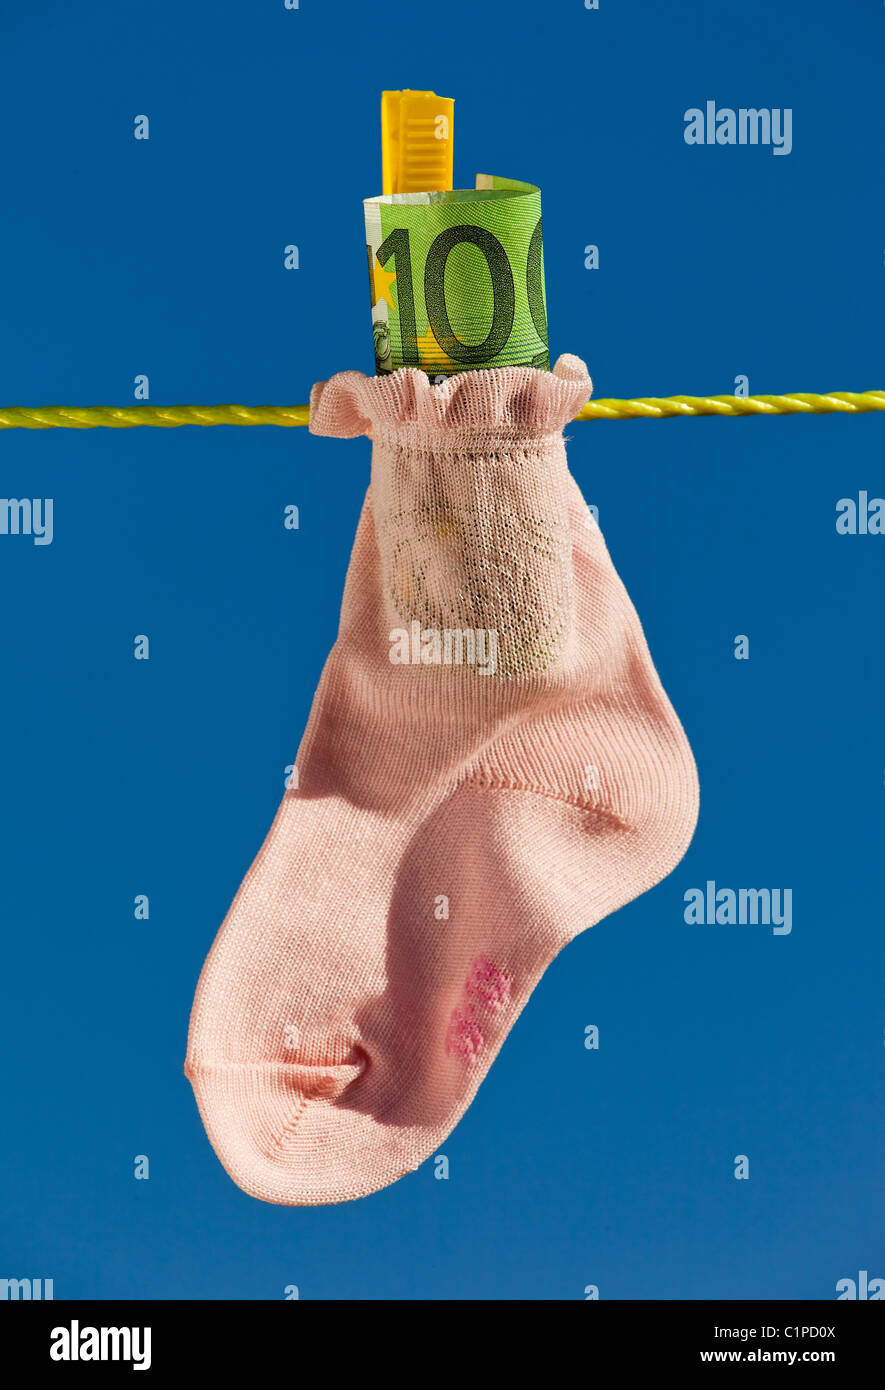 Baby calze su stendibiancheria con le banconote in euro Foto Stock